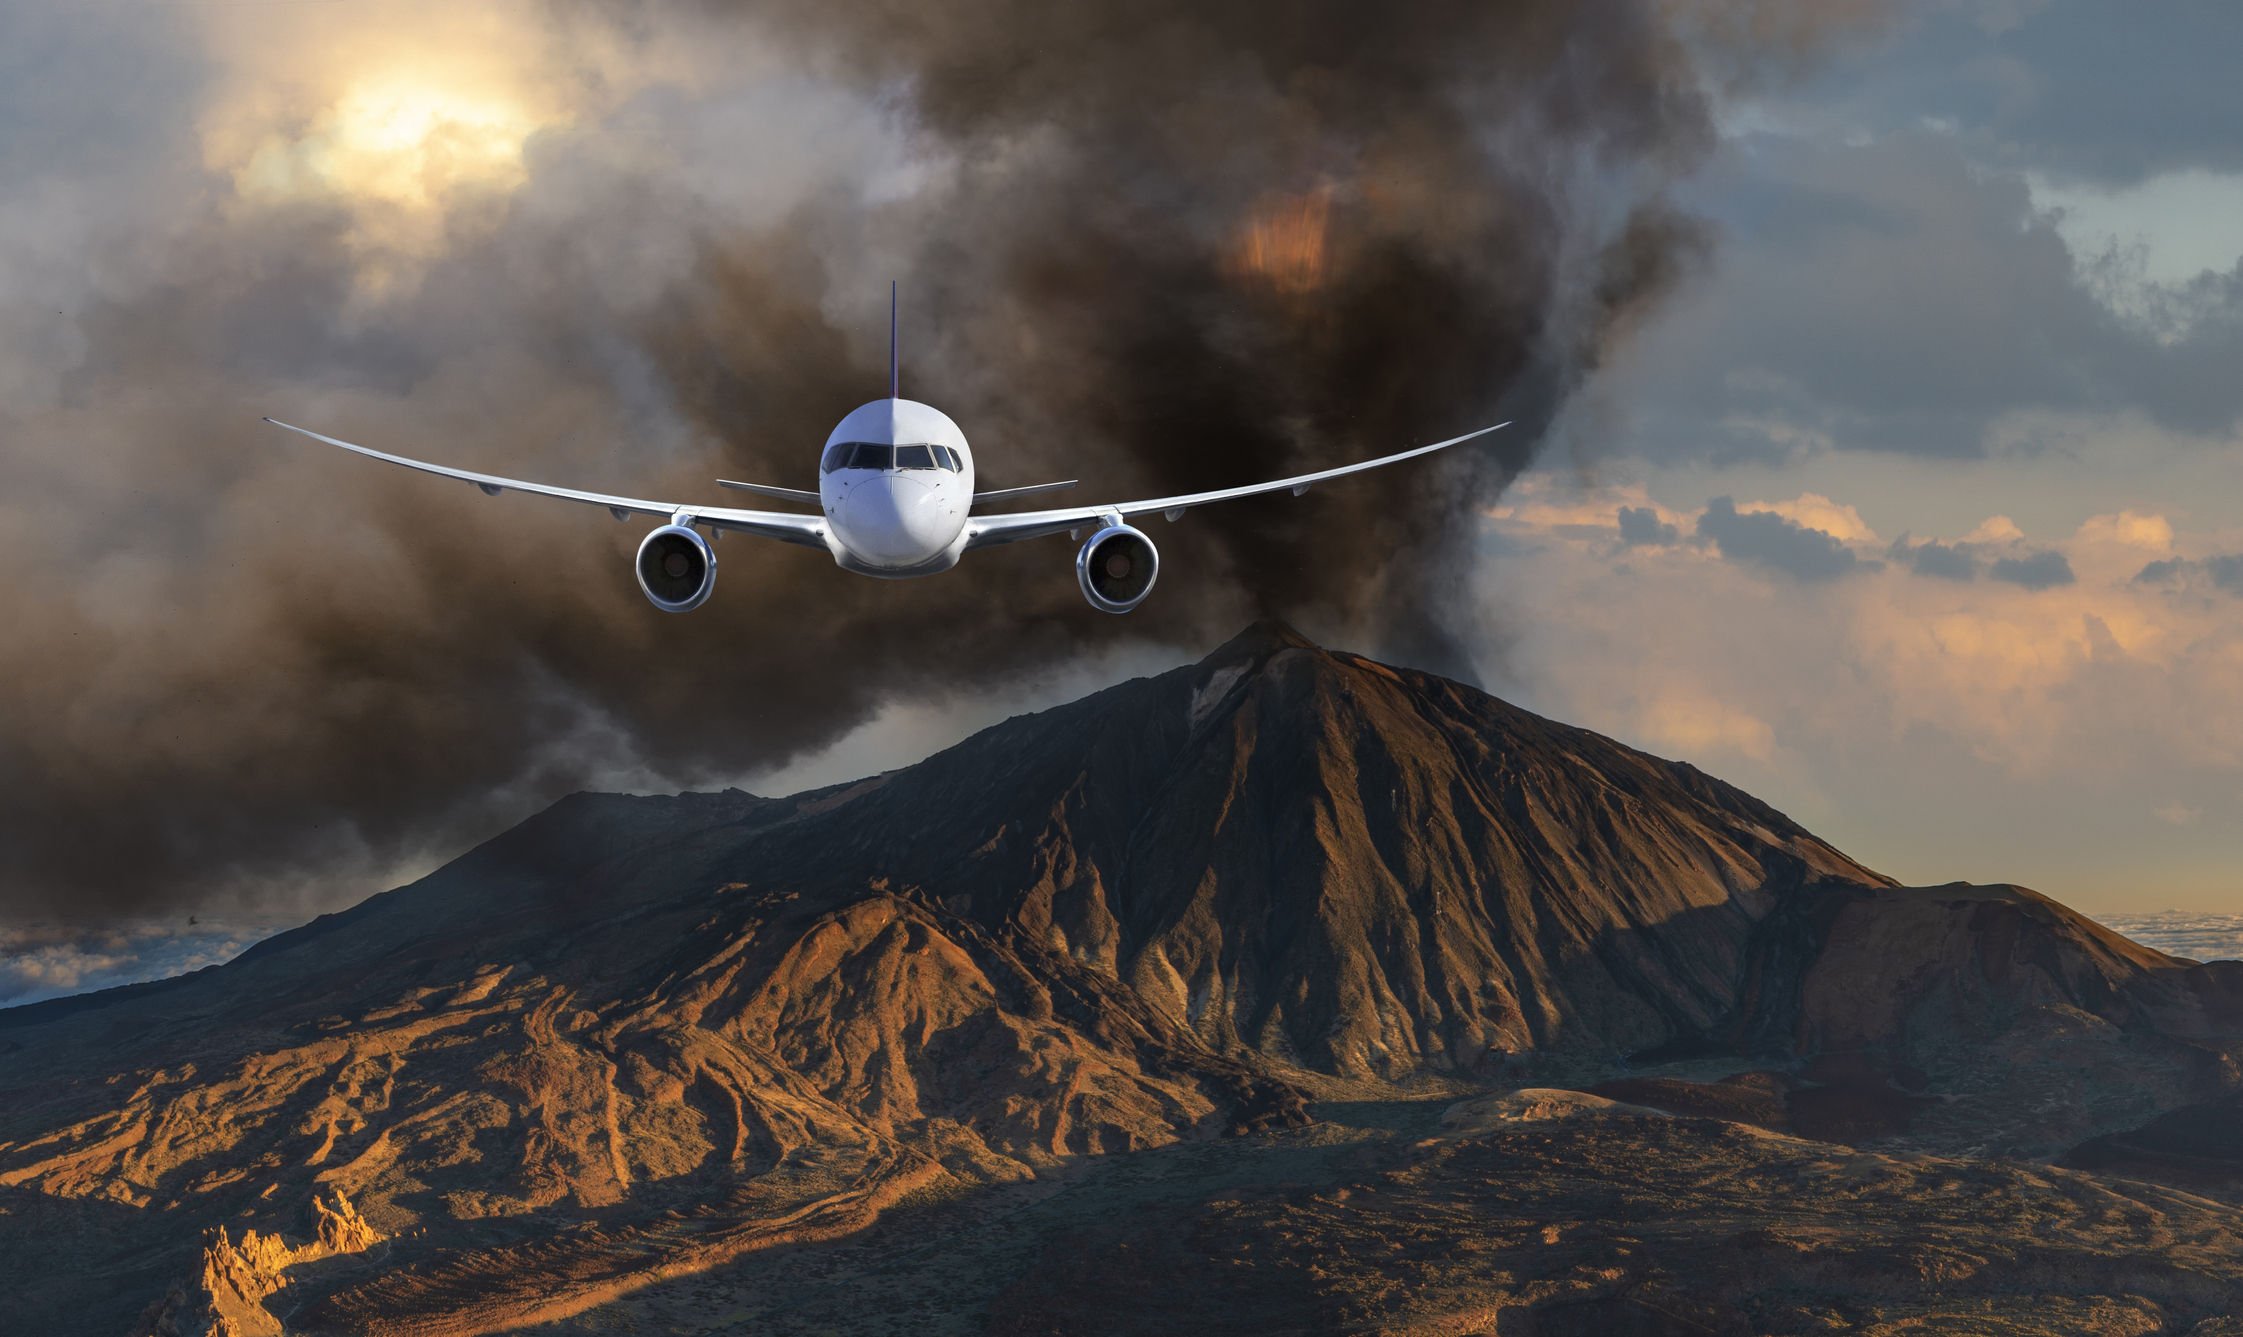 Et fly flyver mod kameraet, en askesky og et vulkansk landskab kan ses i baggrunden.